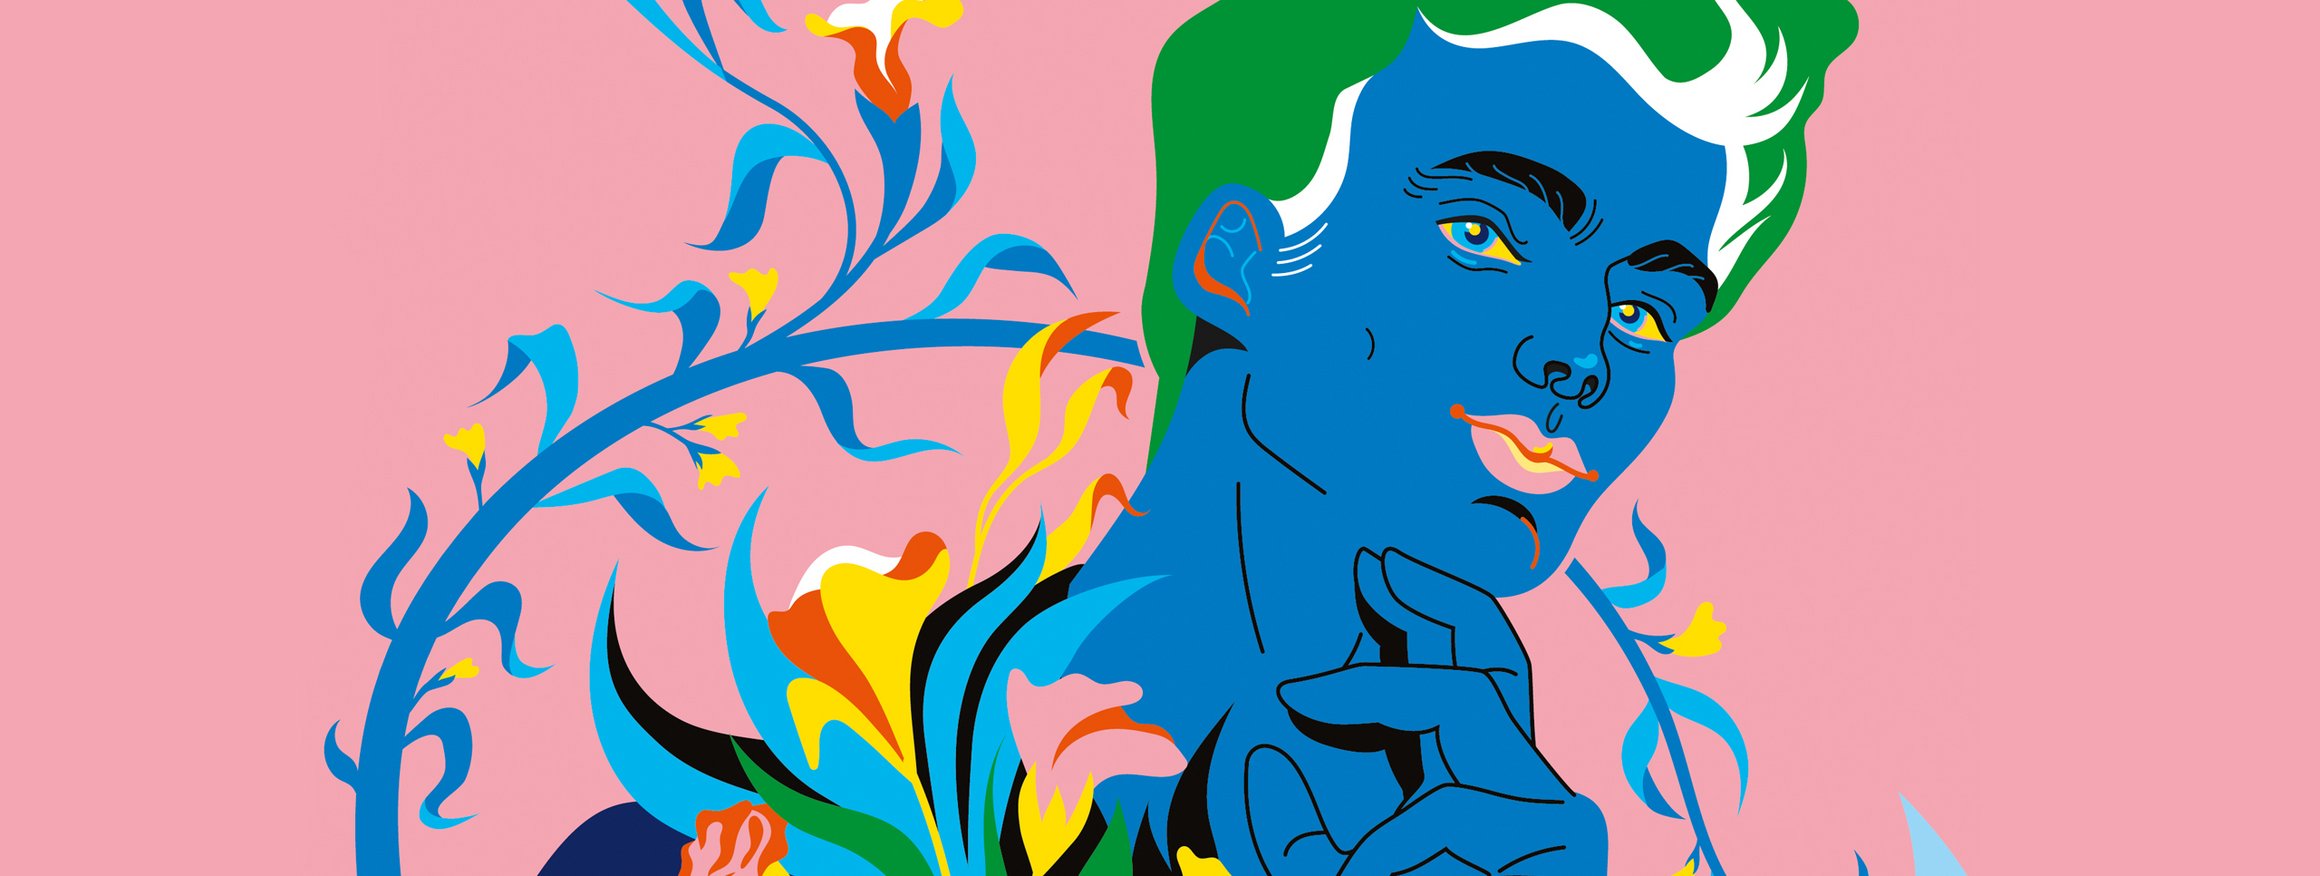 Die Illustration zeigt einen narzisstischen Mann mit blauer Haut und giftgrünen Haaren umringt von schönen Blumen